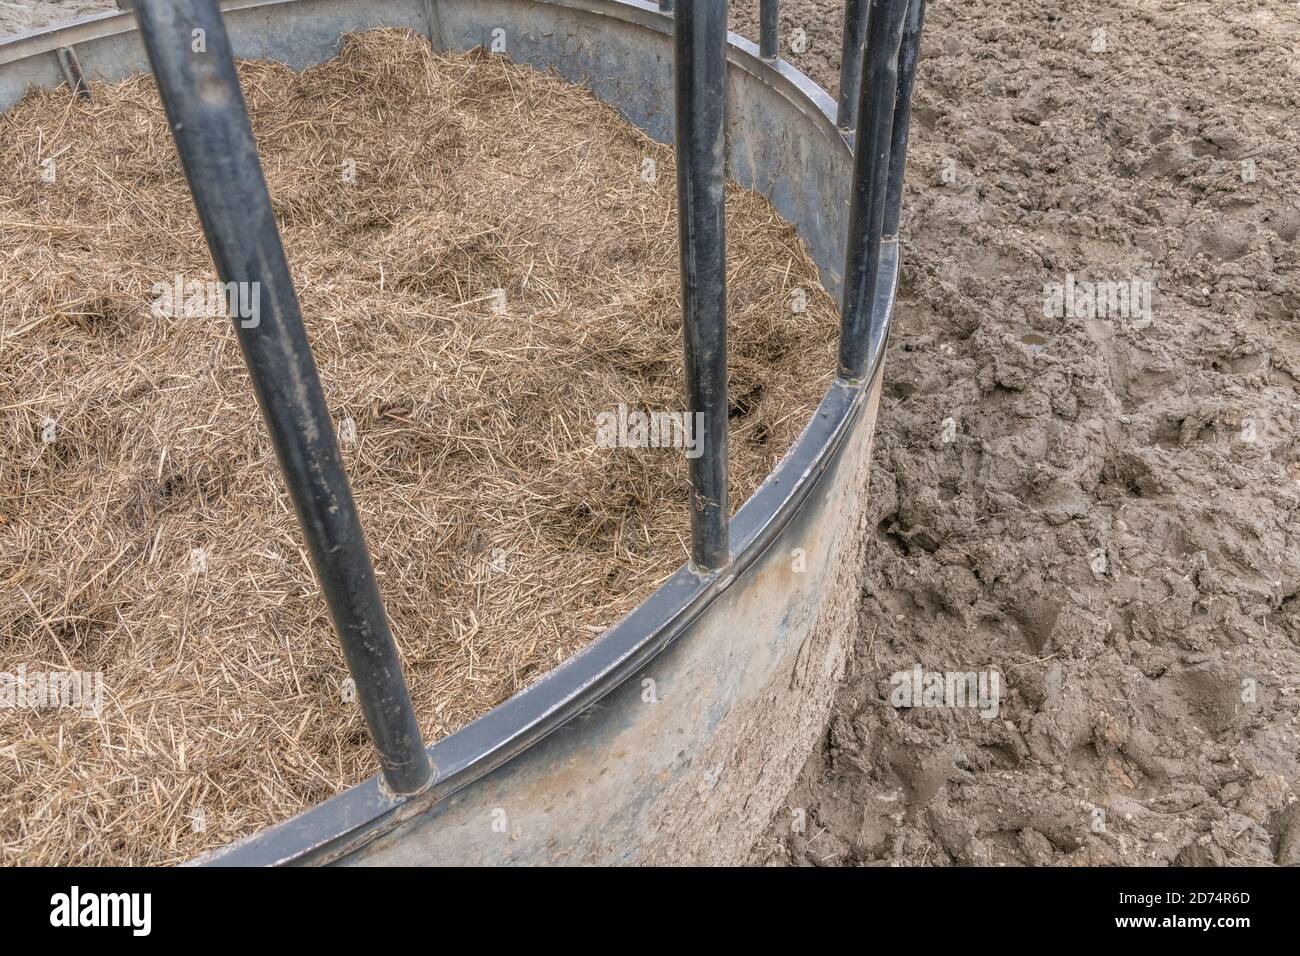 Kreisförmige Viehfutter mit Heulage verpackt, & umgeben von Rinderschlamm & Schlamm. Für die britische Viehwirtschaft, Landwirtschaft und Landwirtschaft in Großbritannien. Stockfoto